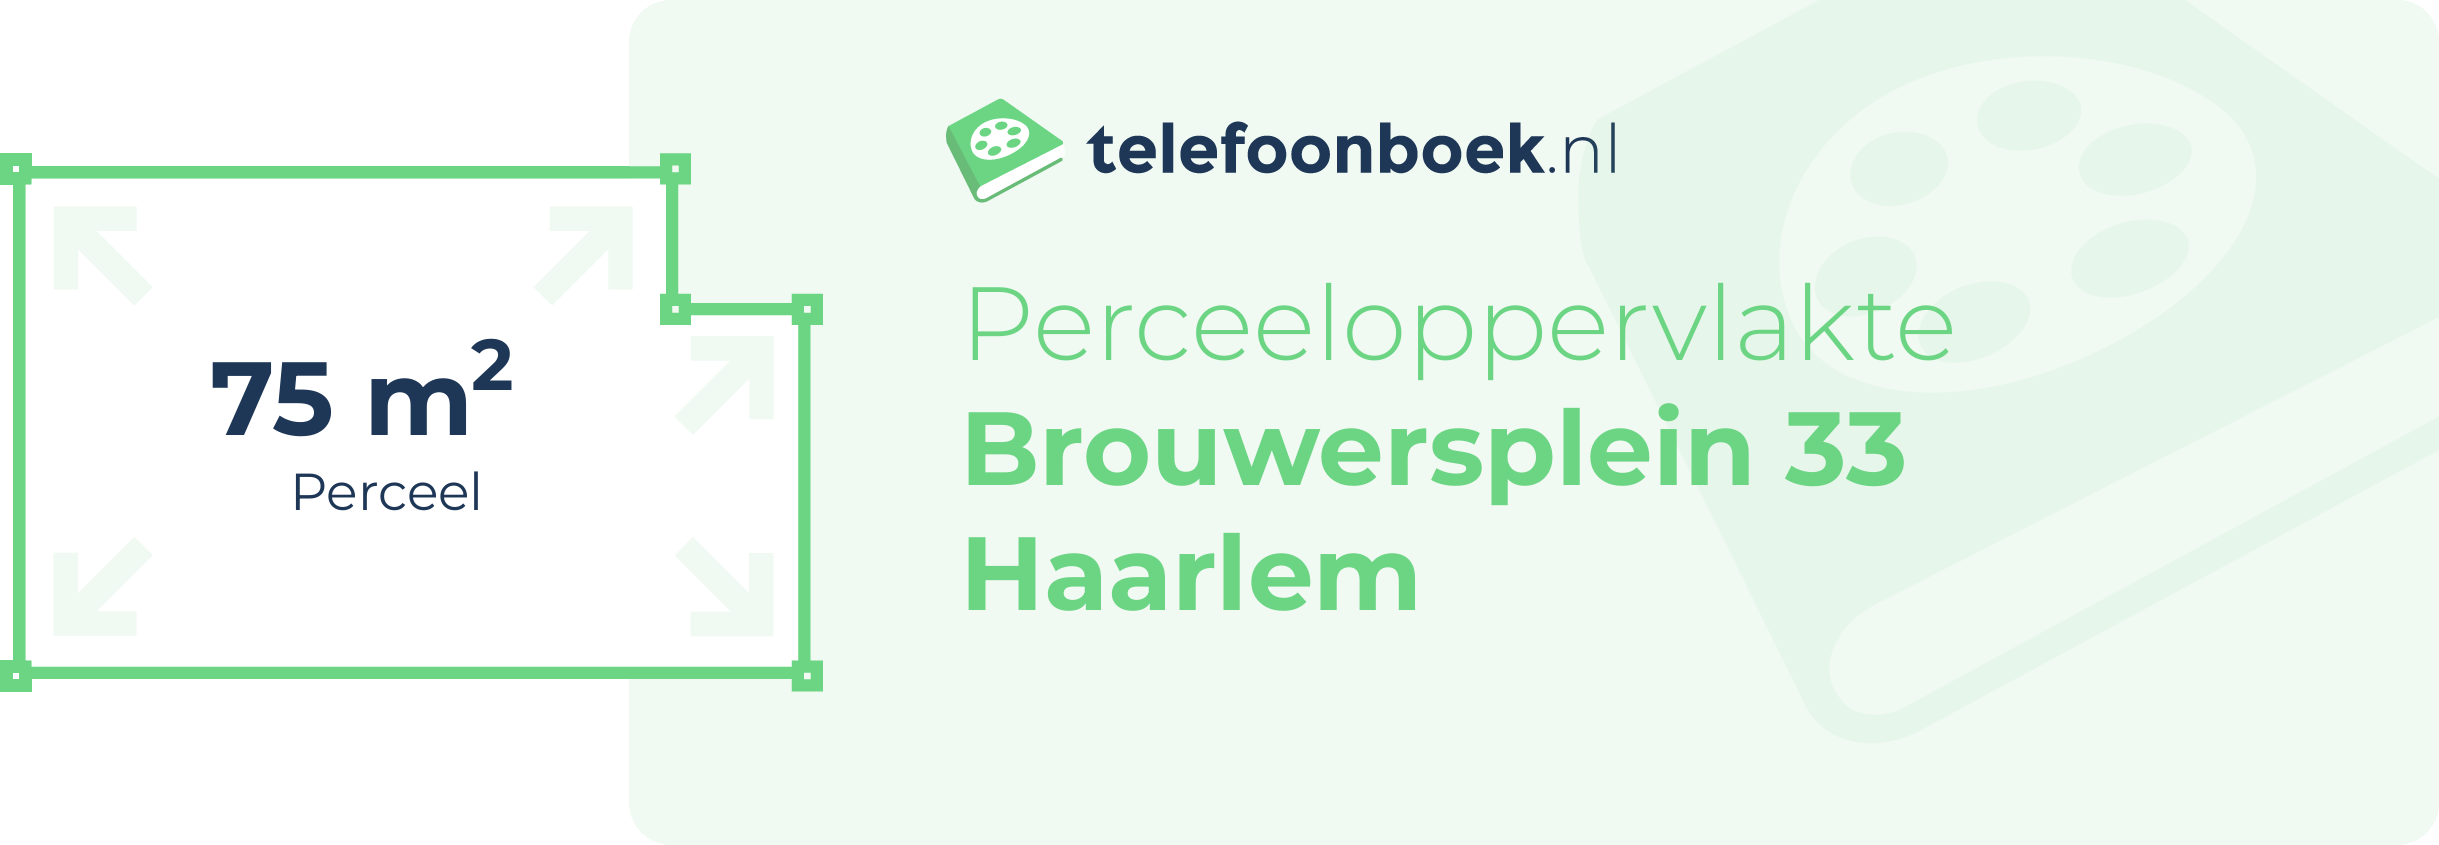 Perceeloppervlakte Brouwersplein 33 Haarlem